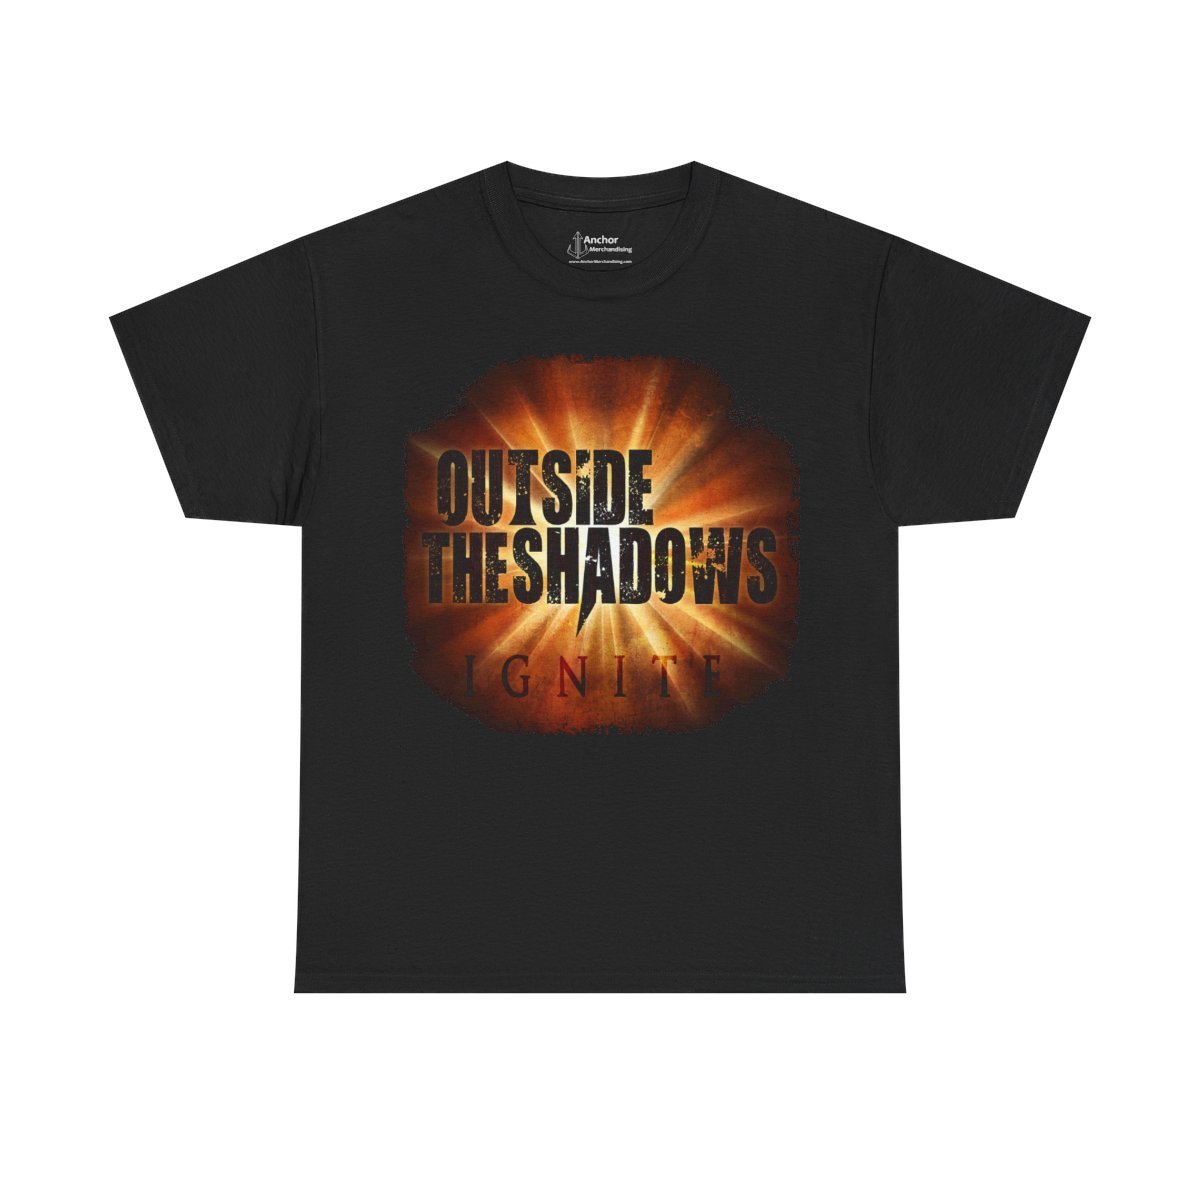 Outside The Shadows – Ignite Short Sleeve Tshirt